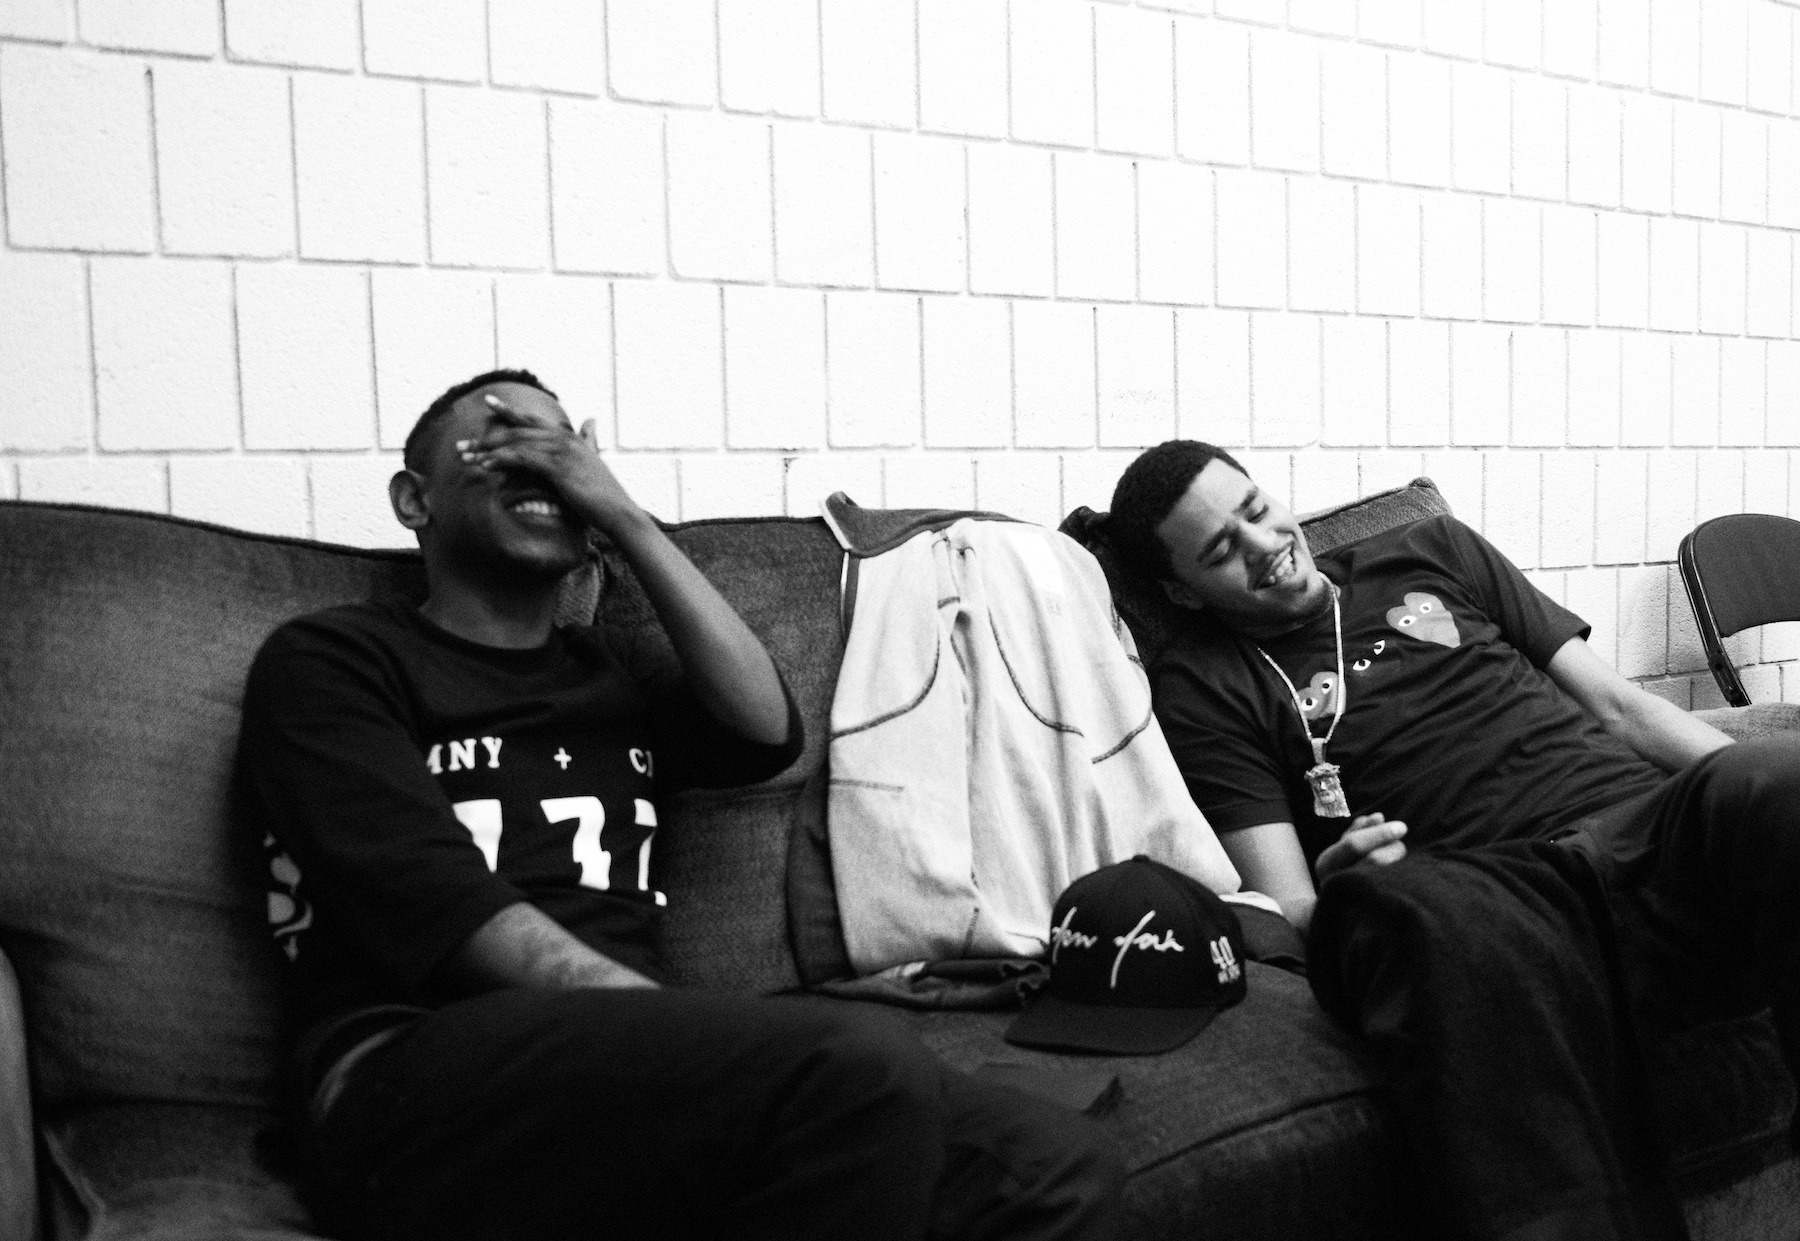 Le projet commun entre J. Cole et Kendrick Lamar ne verra véritablement jamais le jour